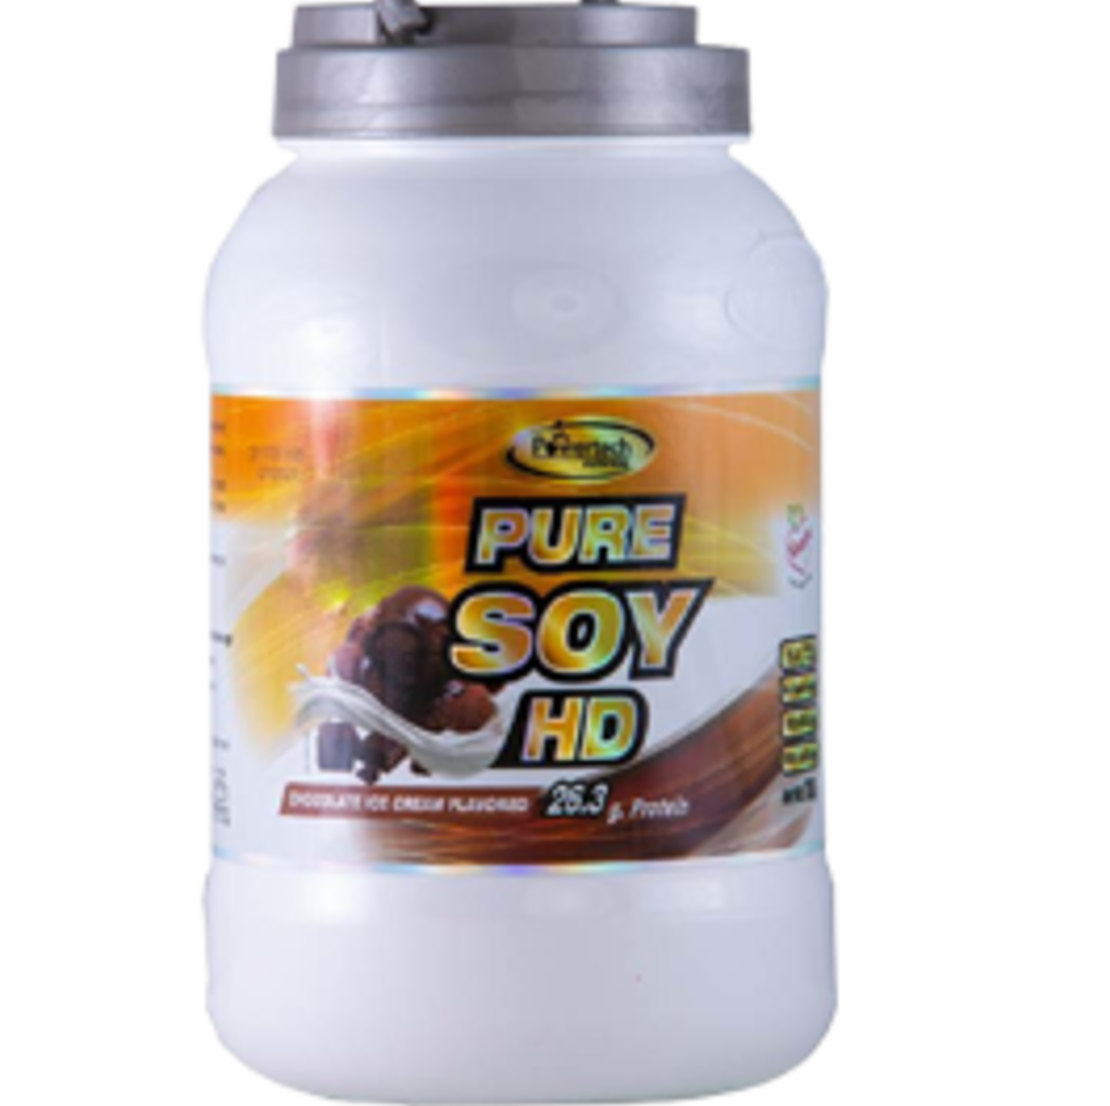 אבקת חלבון טבעונית סויה PURE SOY HD POWERTECH NUTRITION, אבקת חלבון טבעונית 700 גרם, כשר בד